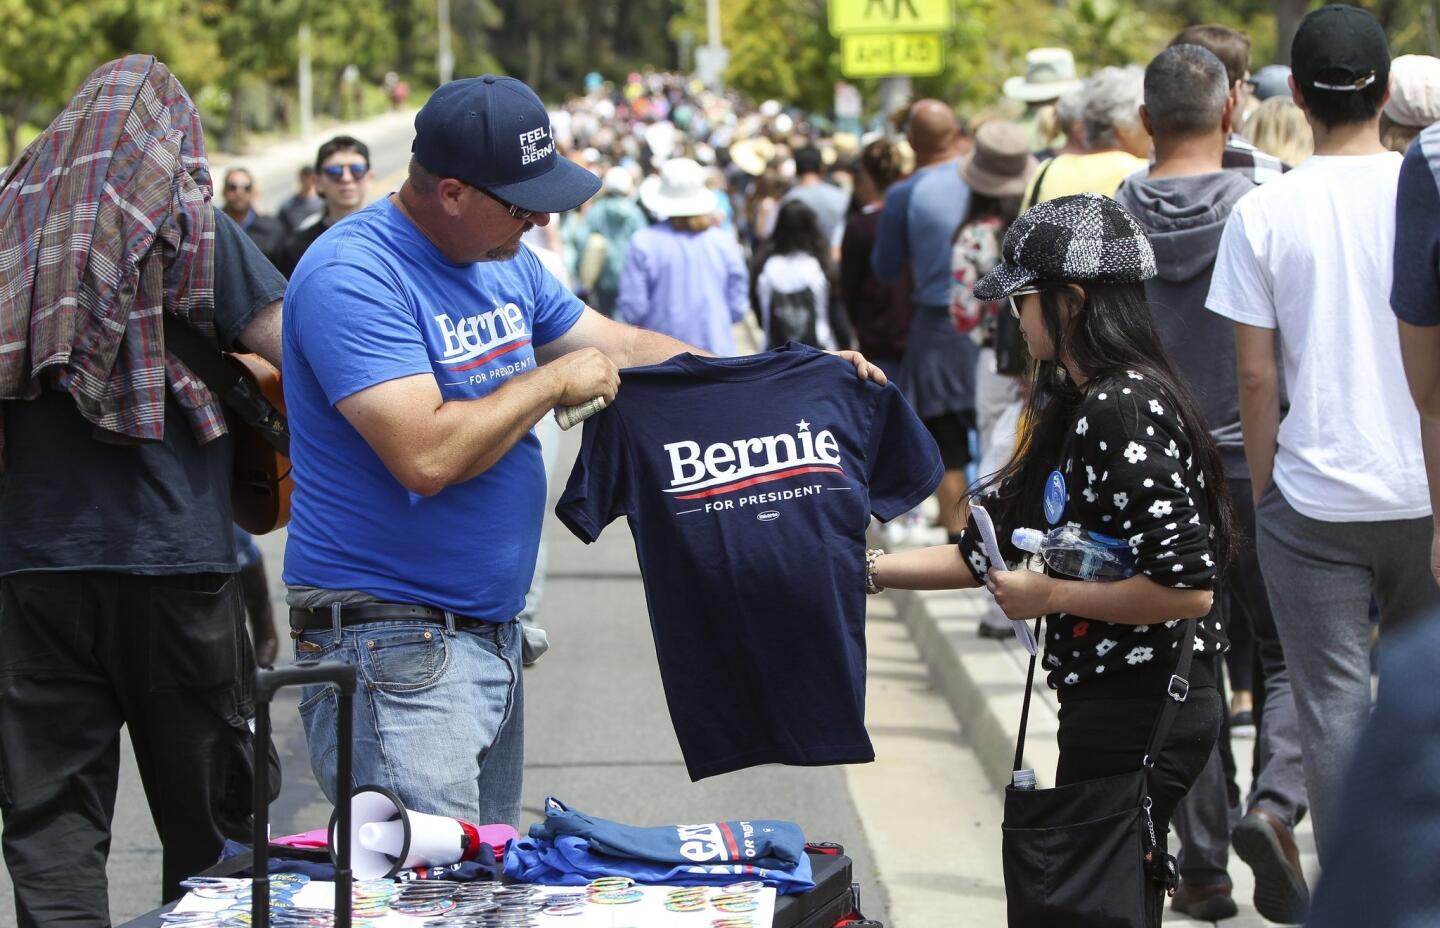 Steve Jones sells Bernie Sanders shirts to people in line to see Democratic presidential candidate Bernie Sanders.